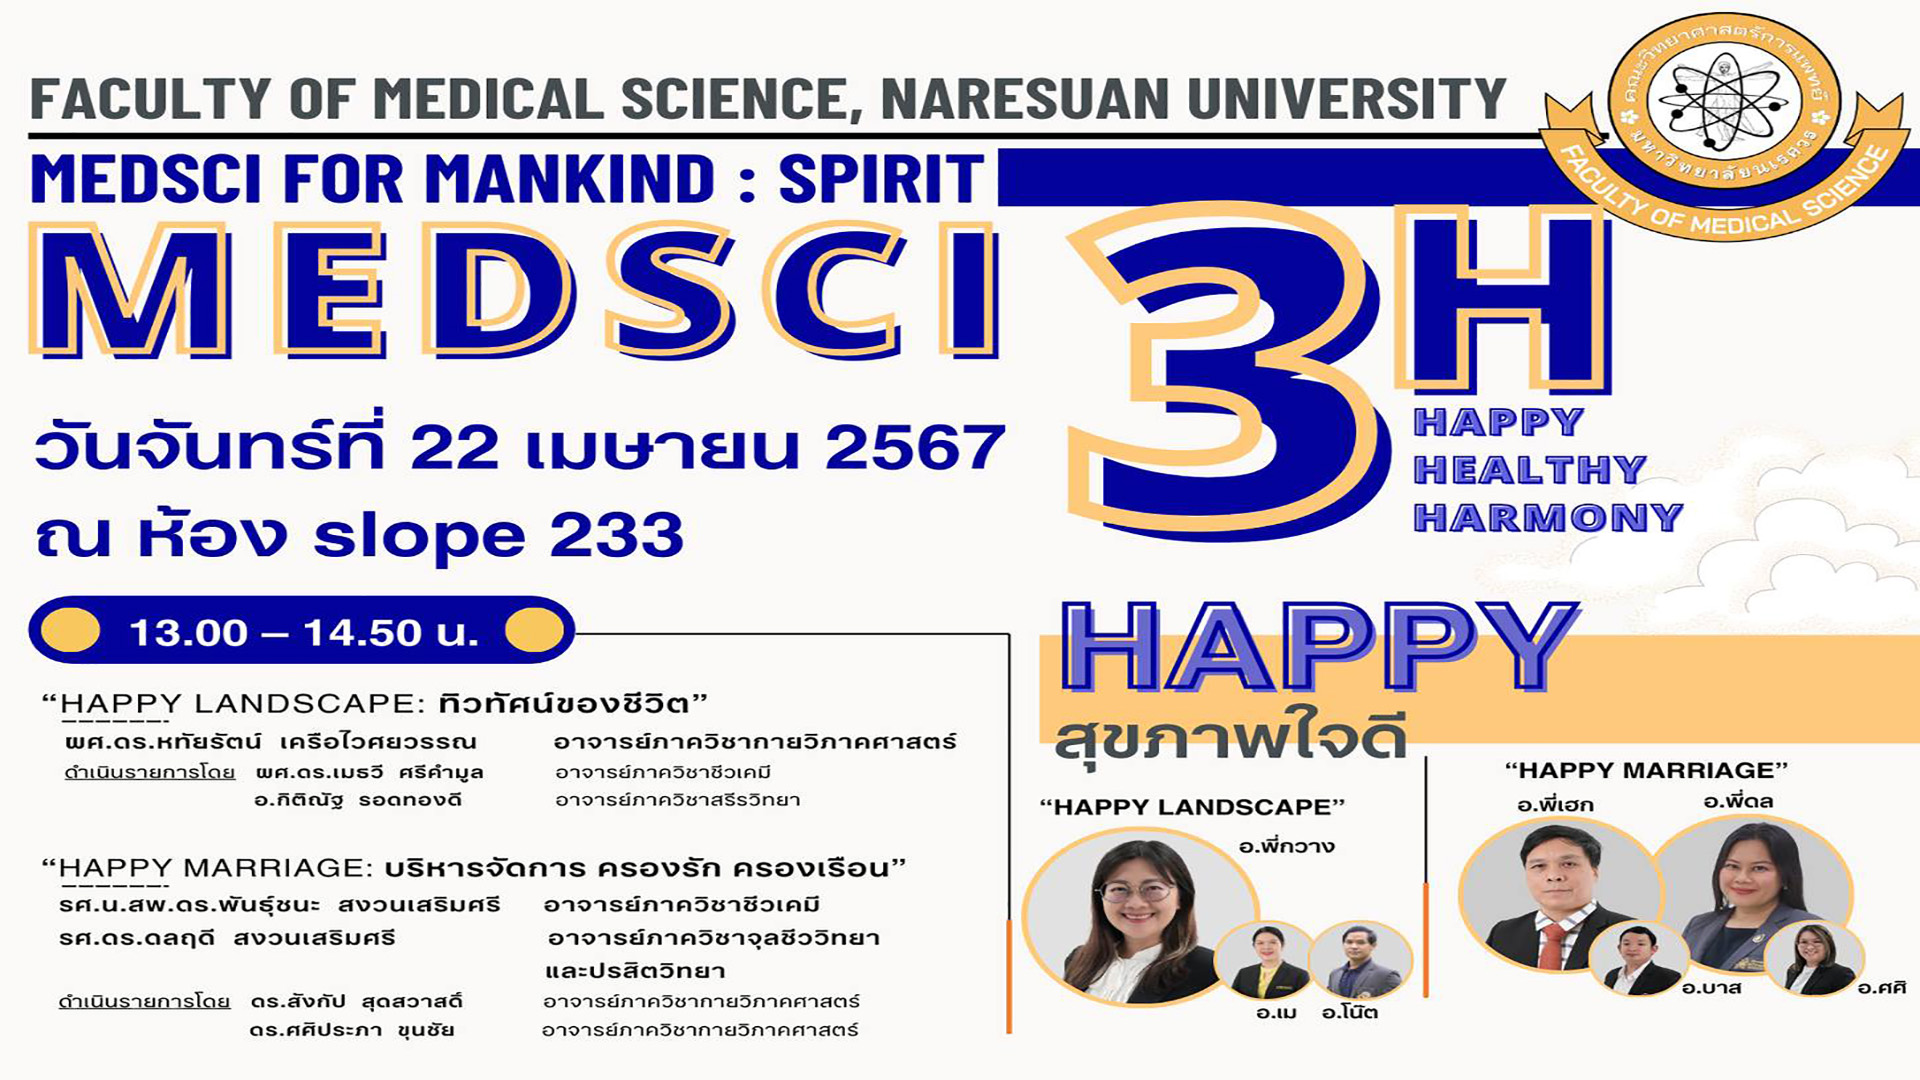 ขอเชิญชวน บุคลากร คณะวิทยาศาสตร์การแพทย์ทุกท่าน เข้าร่วมกิจกรรม “MedSci 3H: Happy Healthy Harmony”